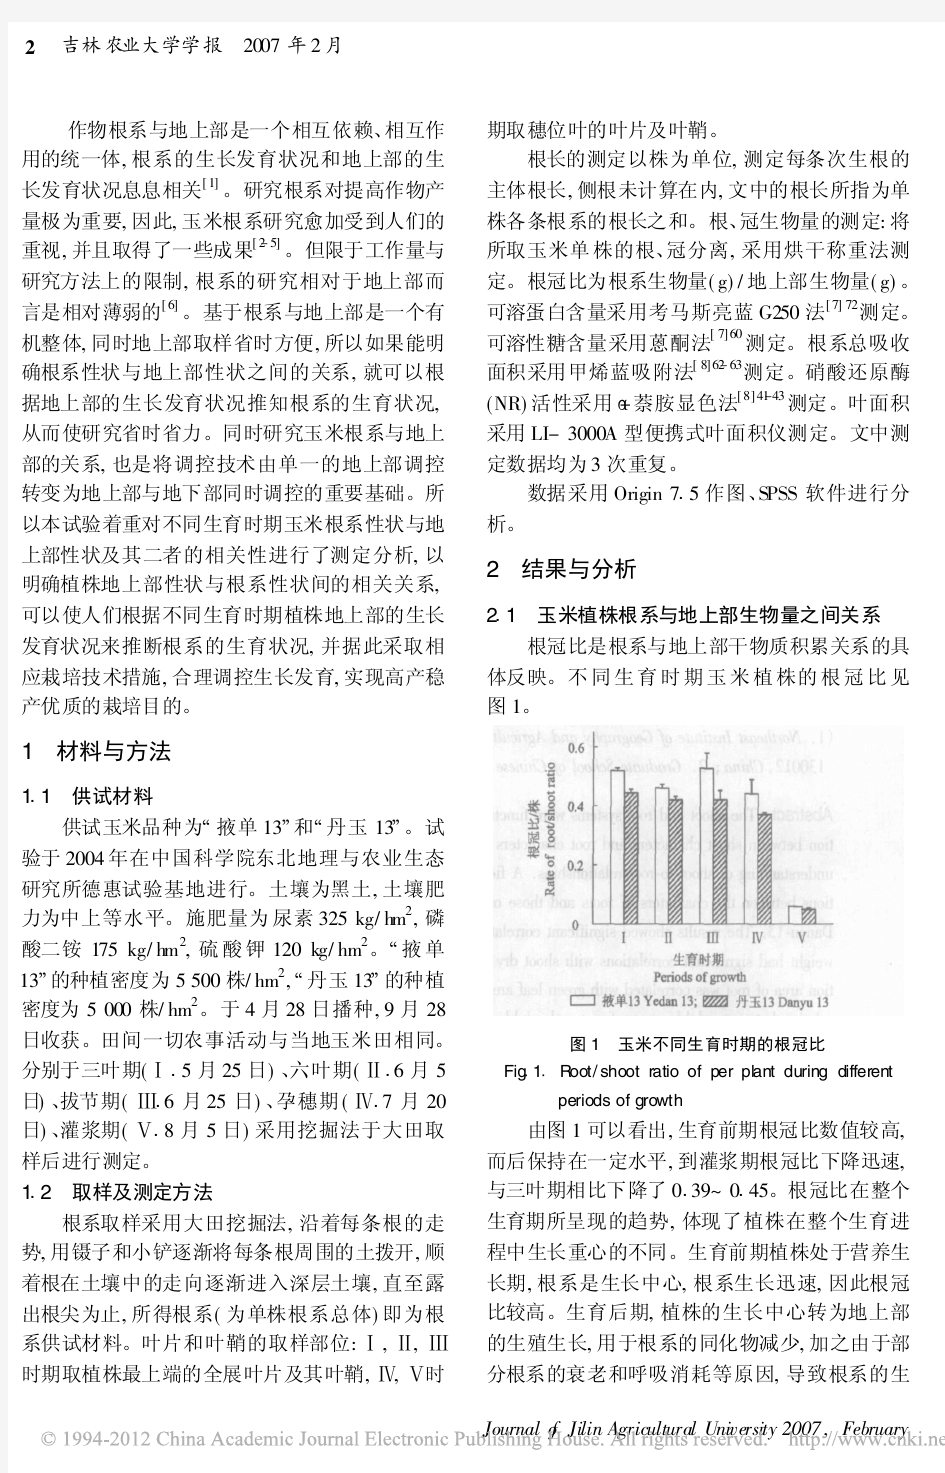 玉米根系性状与地上部性状的相关性研究_刘胜群